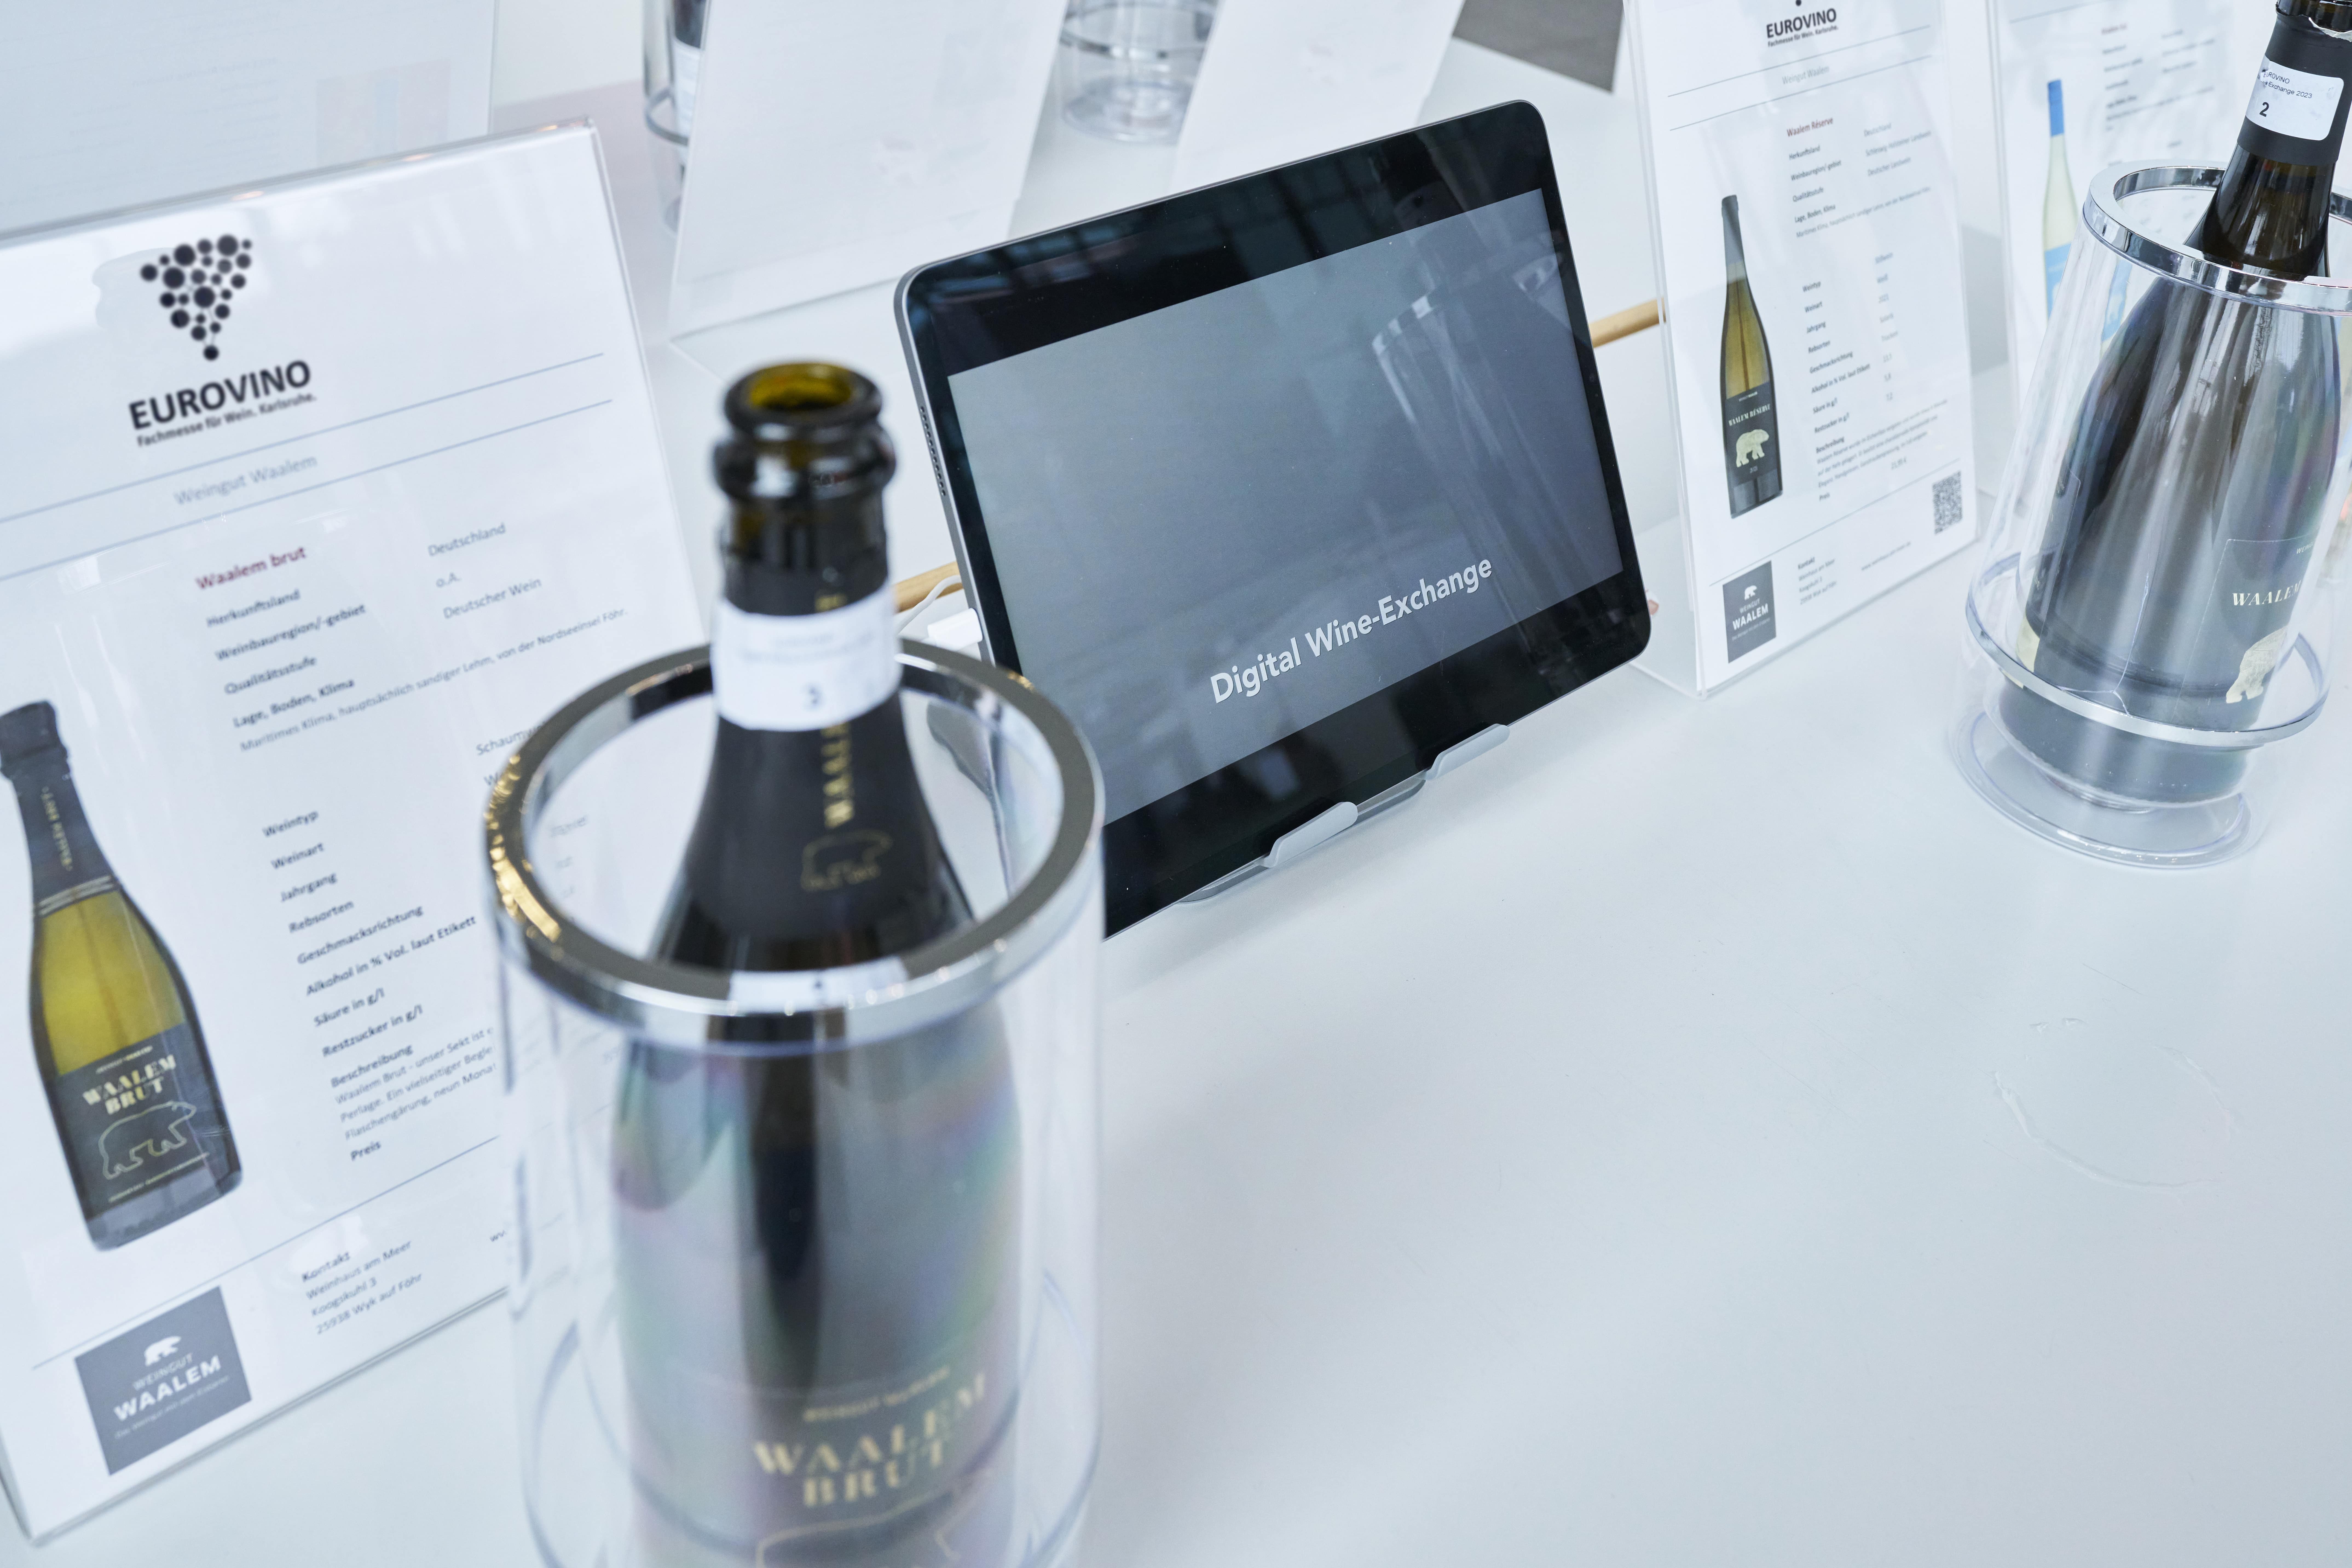 Ein Beispiel wie der Digital Wine Exchange auf der Eurovino aussehen kann: Indem der Wein vor Ort aussgestellt wird und dabei ein Tablet mit ein Weindatenbank.